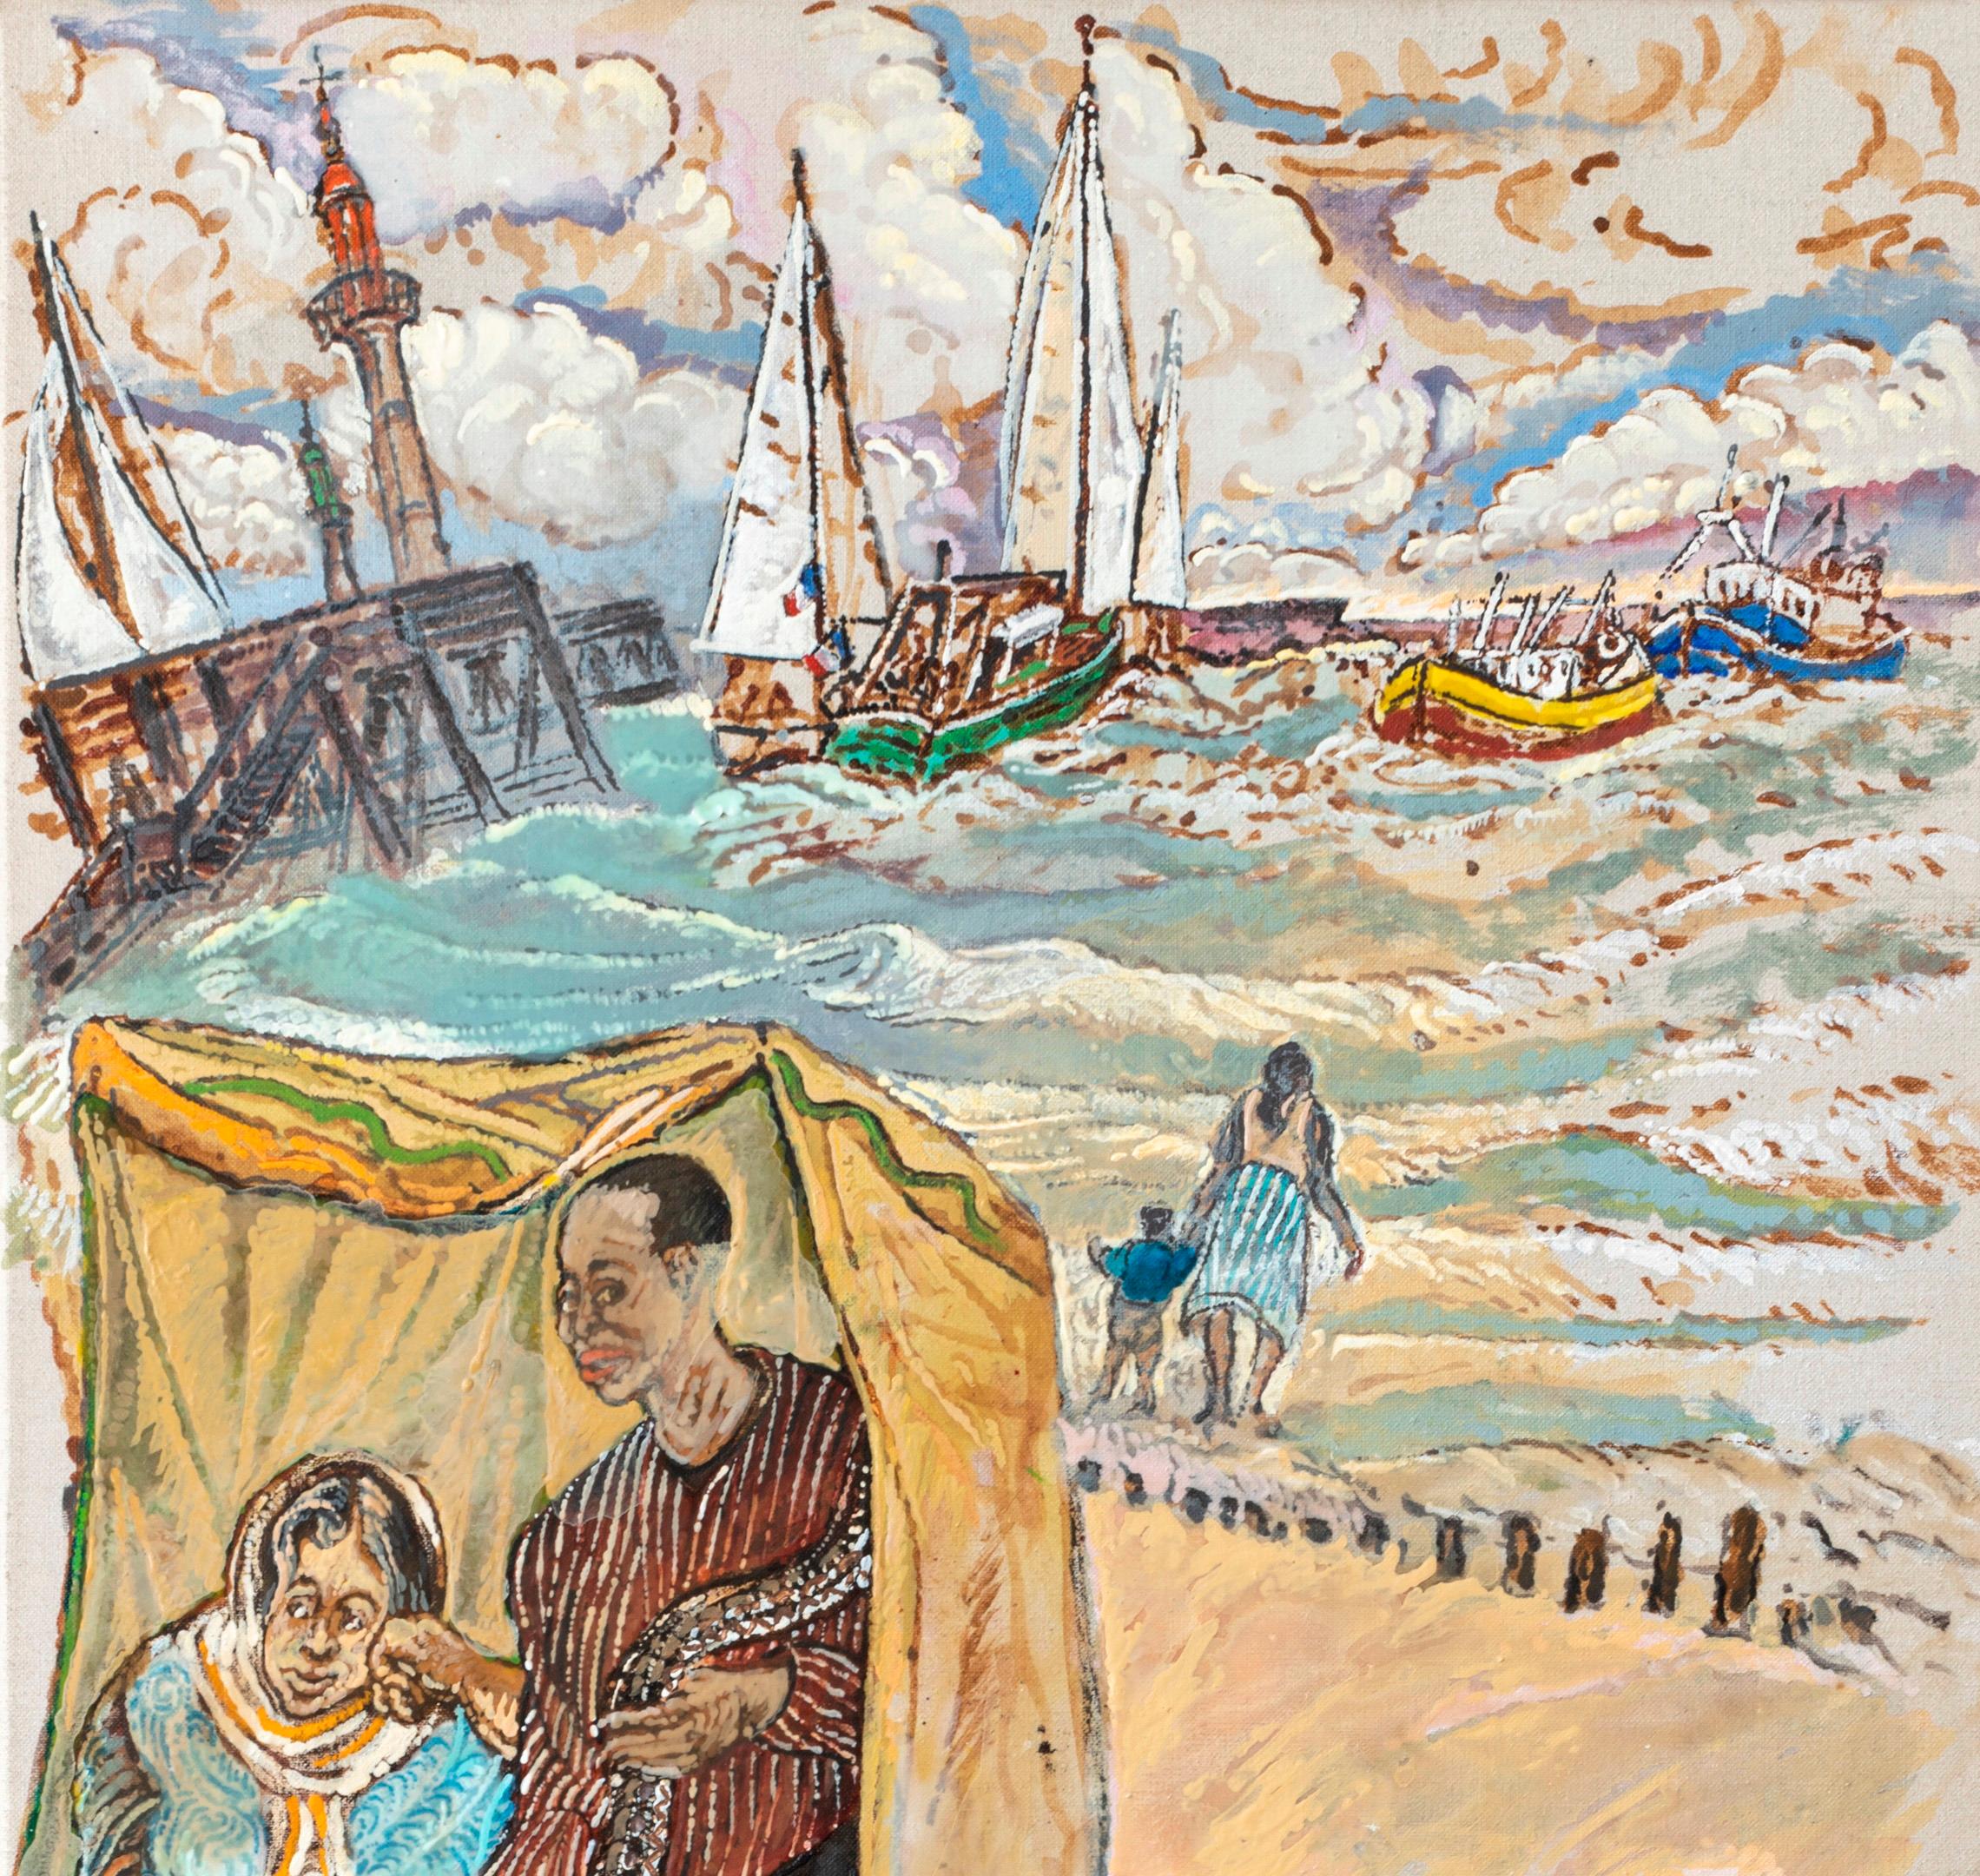 The teller A Moreno Moreno Art contemporain peinture à l'huile mer sirène bateau sable - Contemporain Painting par Moreno Pincas